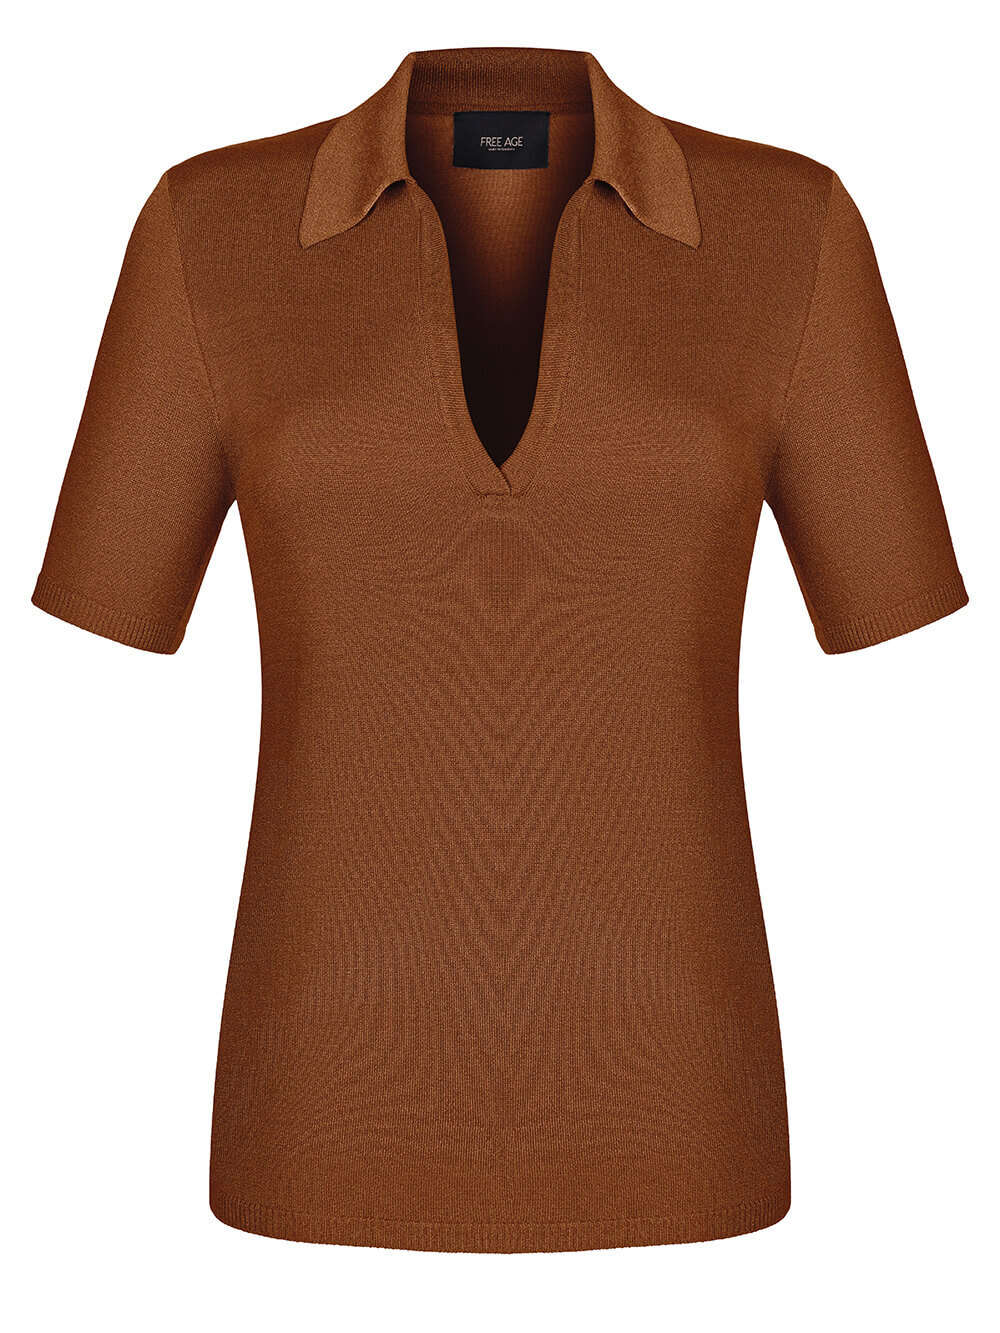 Женский джемпер коричневого цвета из шелка и вискозы - фото 1